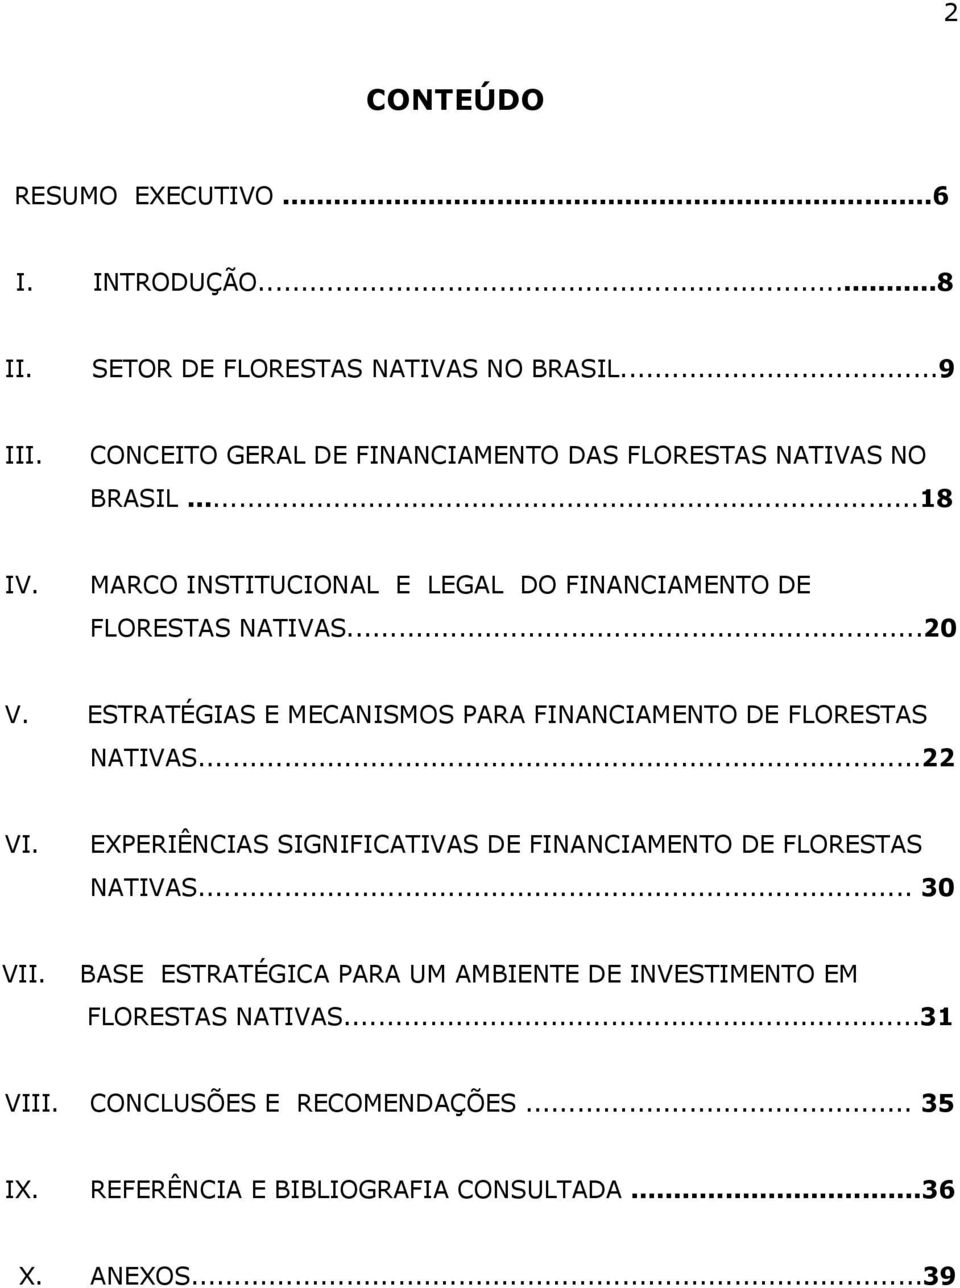 ESTRATÉGIAS E MECANISMOS PARA FINANCIAMENTO DE FLORESTAS NATIVAS...22 VI. EXPERIÊNCIAS SIGNIFICATIVAS DE FINANCIAMENTO DE FLORESTAS NATIVAS.